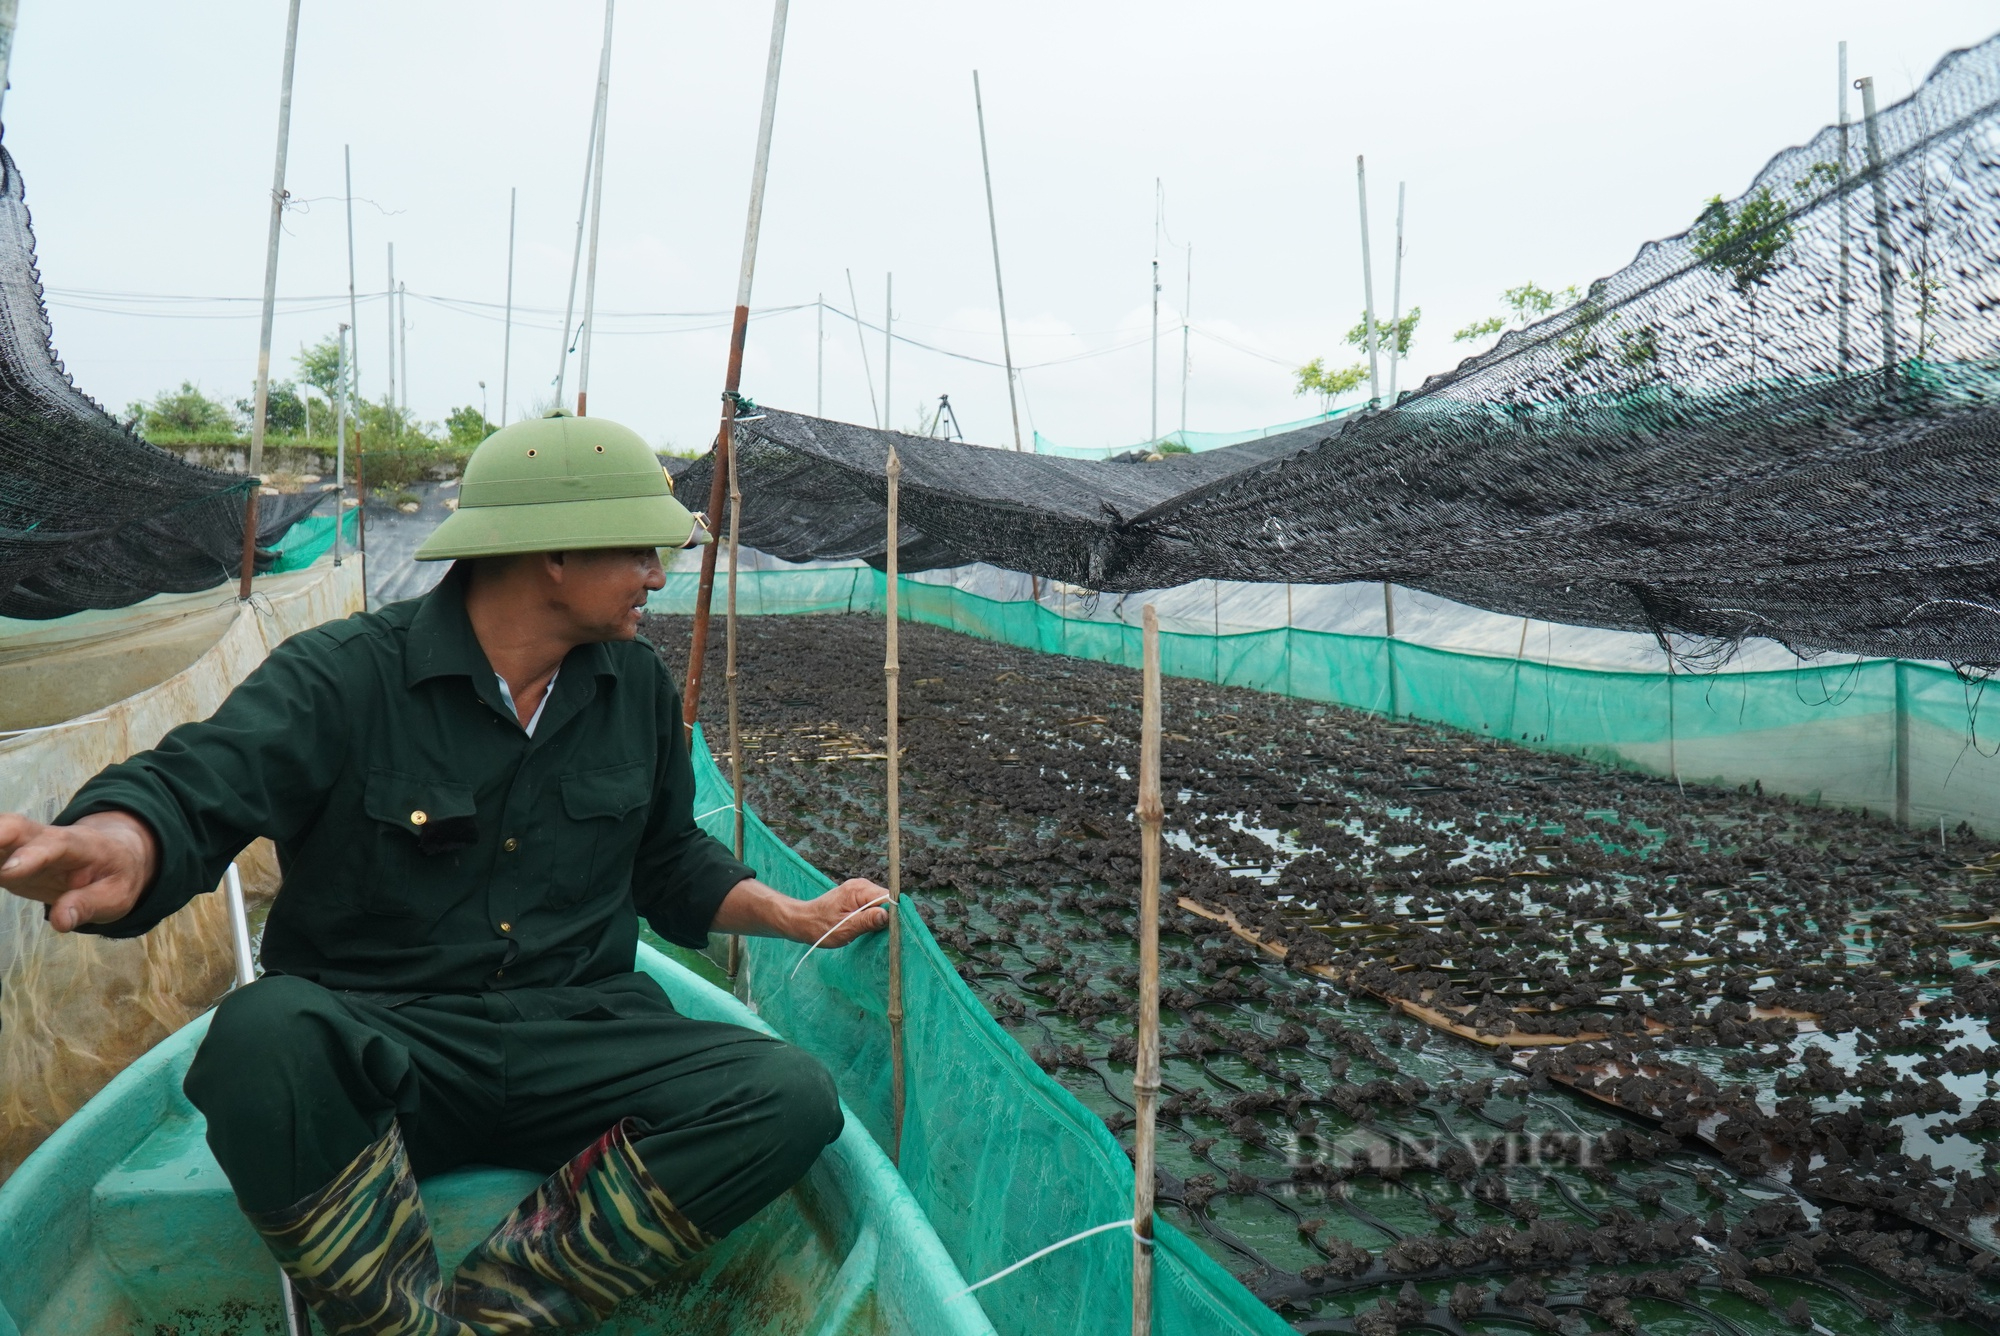 Nuôi ếch ghép với cá trên 2 mẫu ao, nông dân Bắc Ninh thu lời 1 tỷ đồng/năm - Ảnh 2.